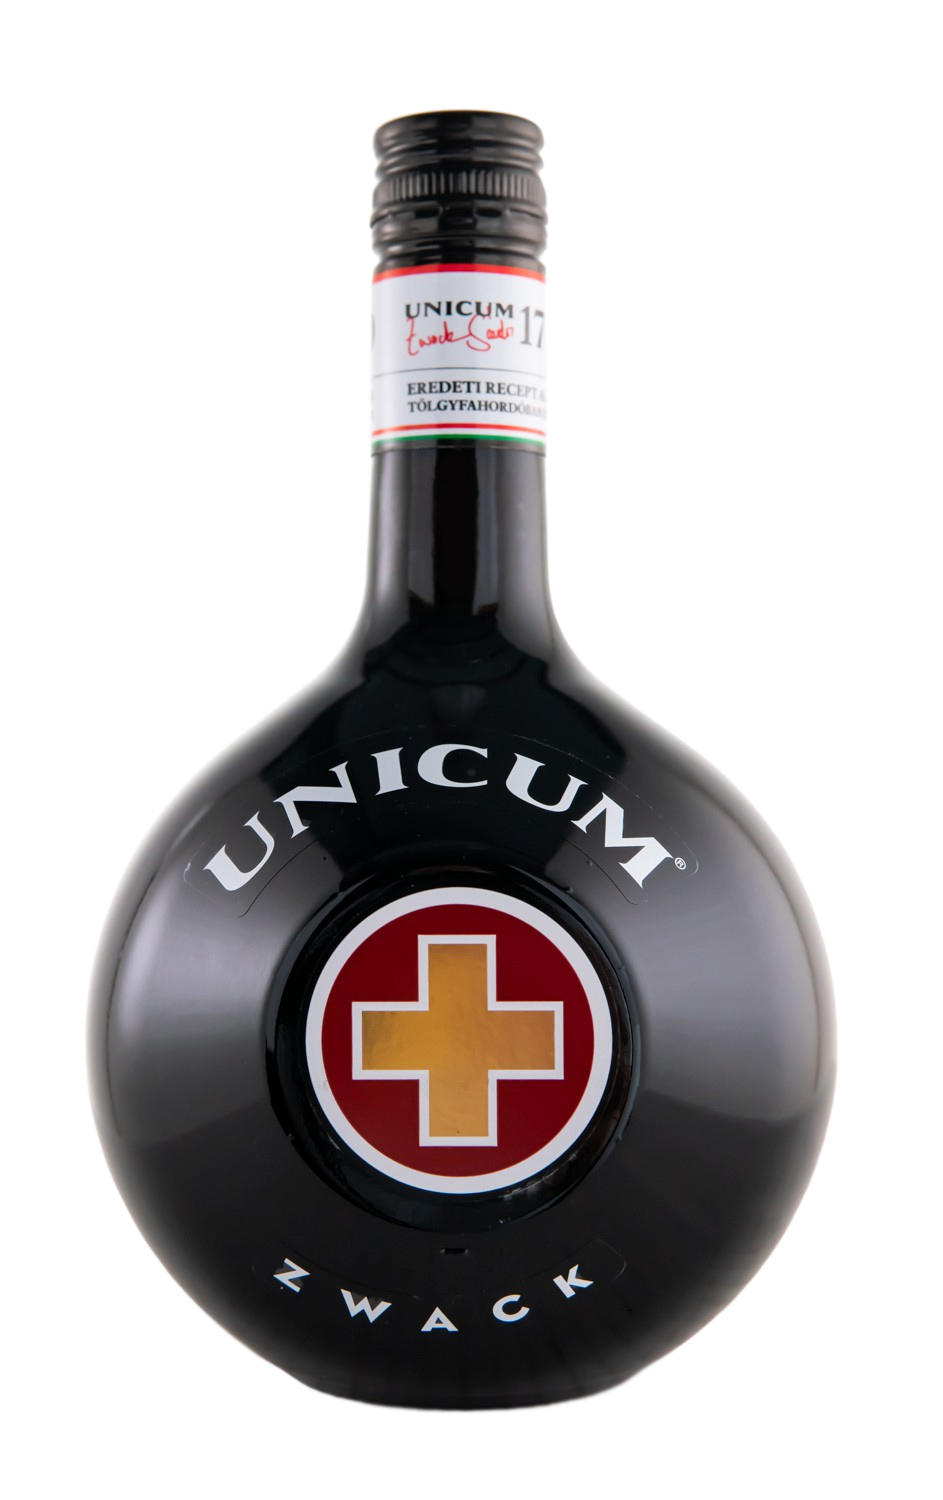 Unicum Zwack Kräuterlikör (1L) günstig kaufen